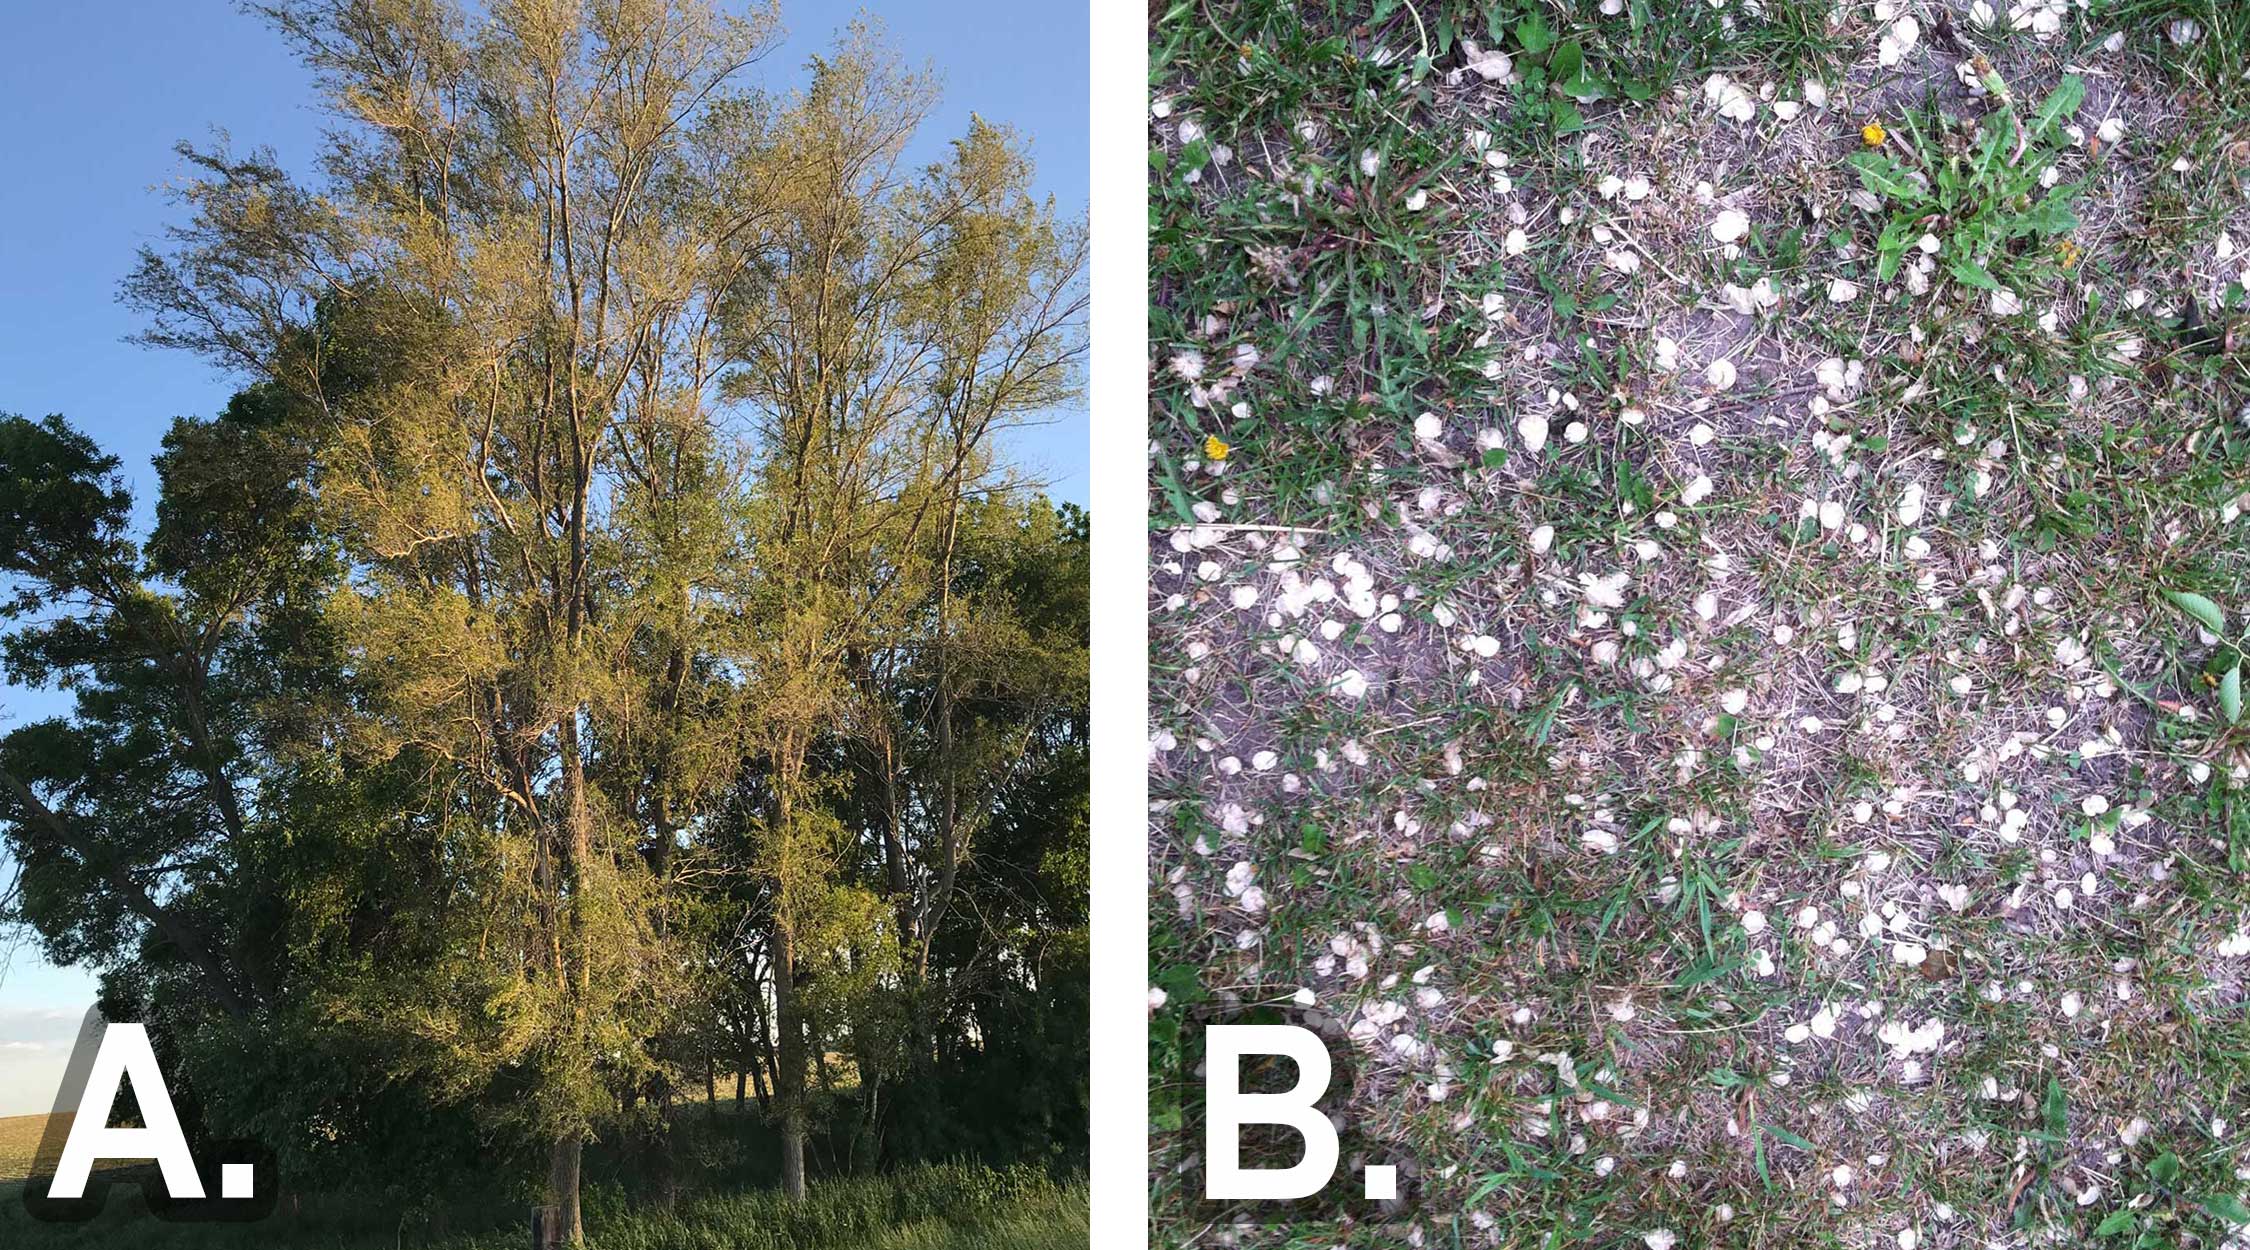 Left: Figure 8-A, a mature Siberian elm tree near a grassland. B. Hundreds of siberian elm seeds scattererd in a bare area near rangeland.